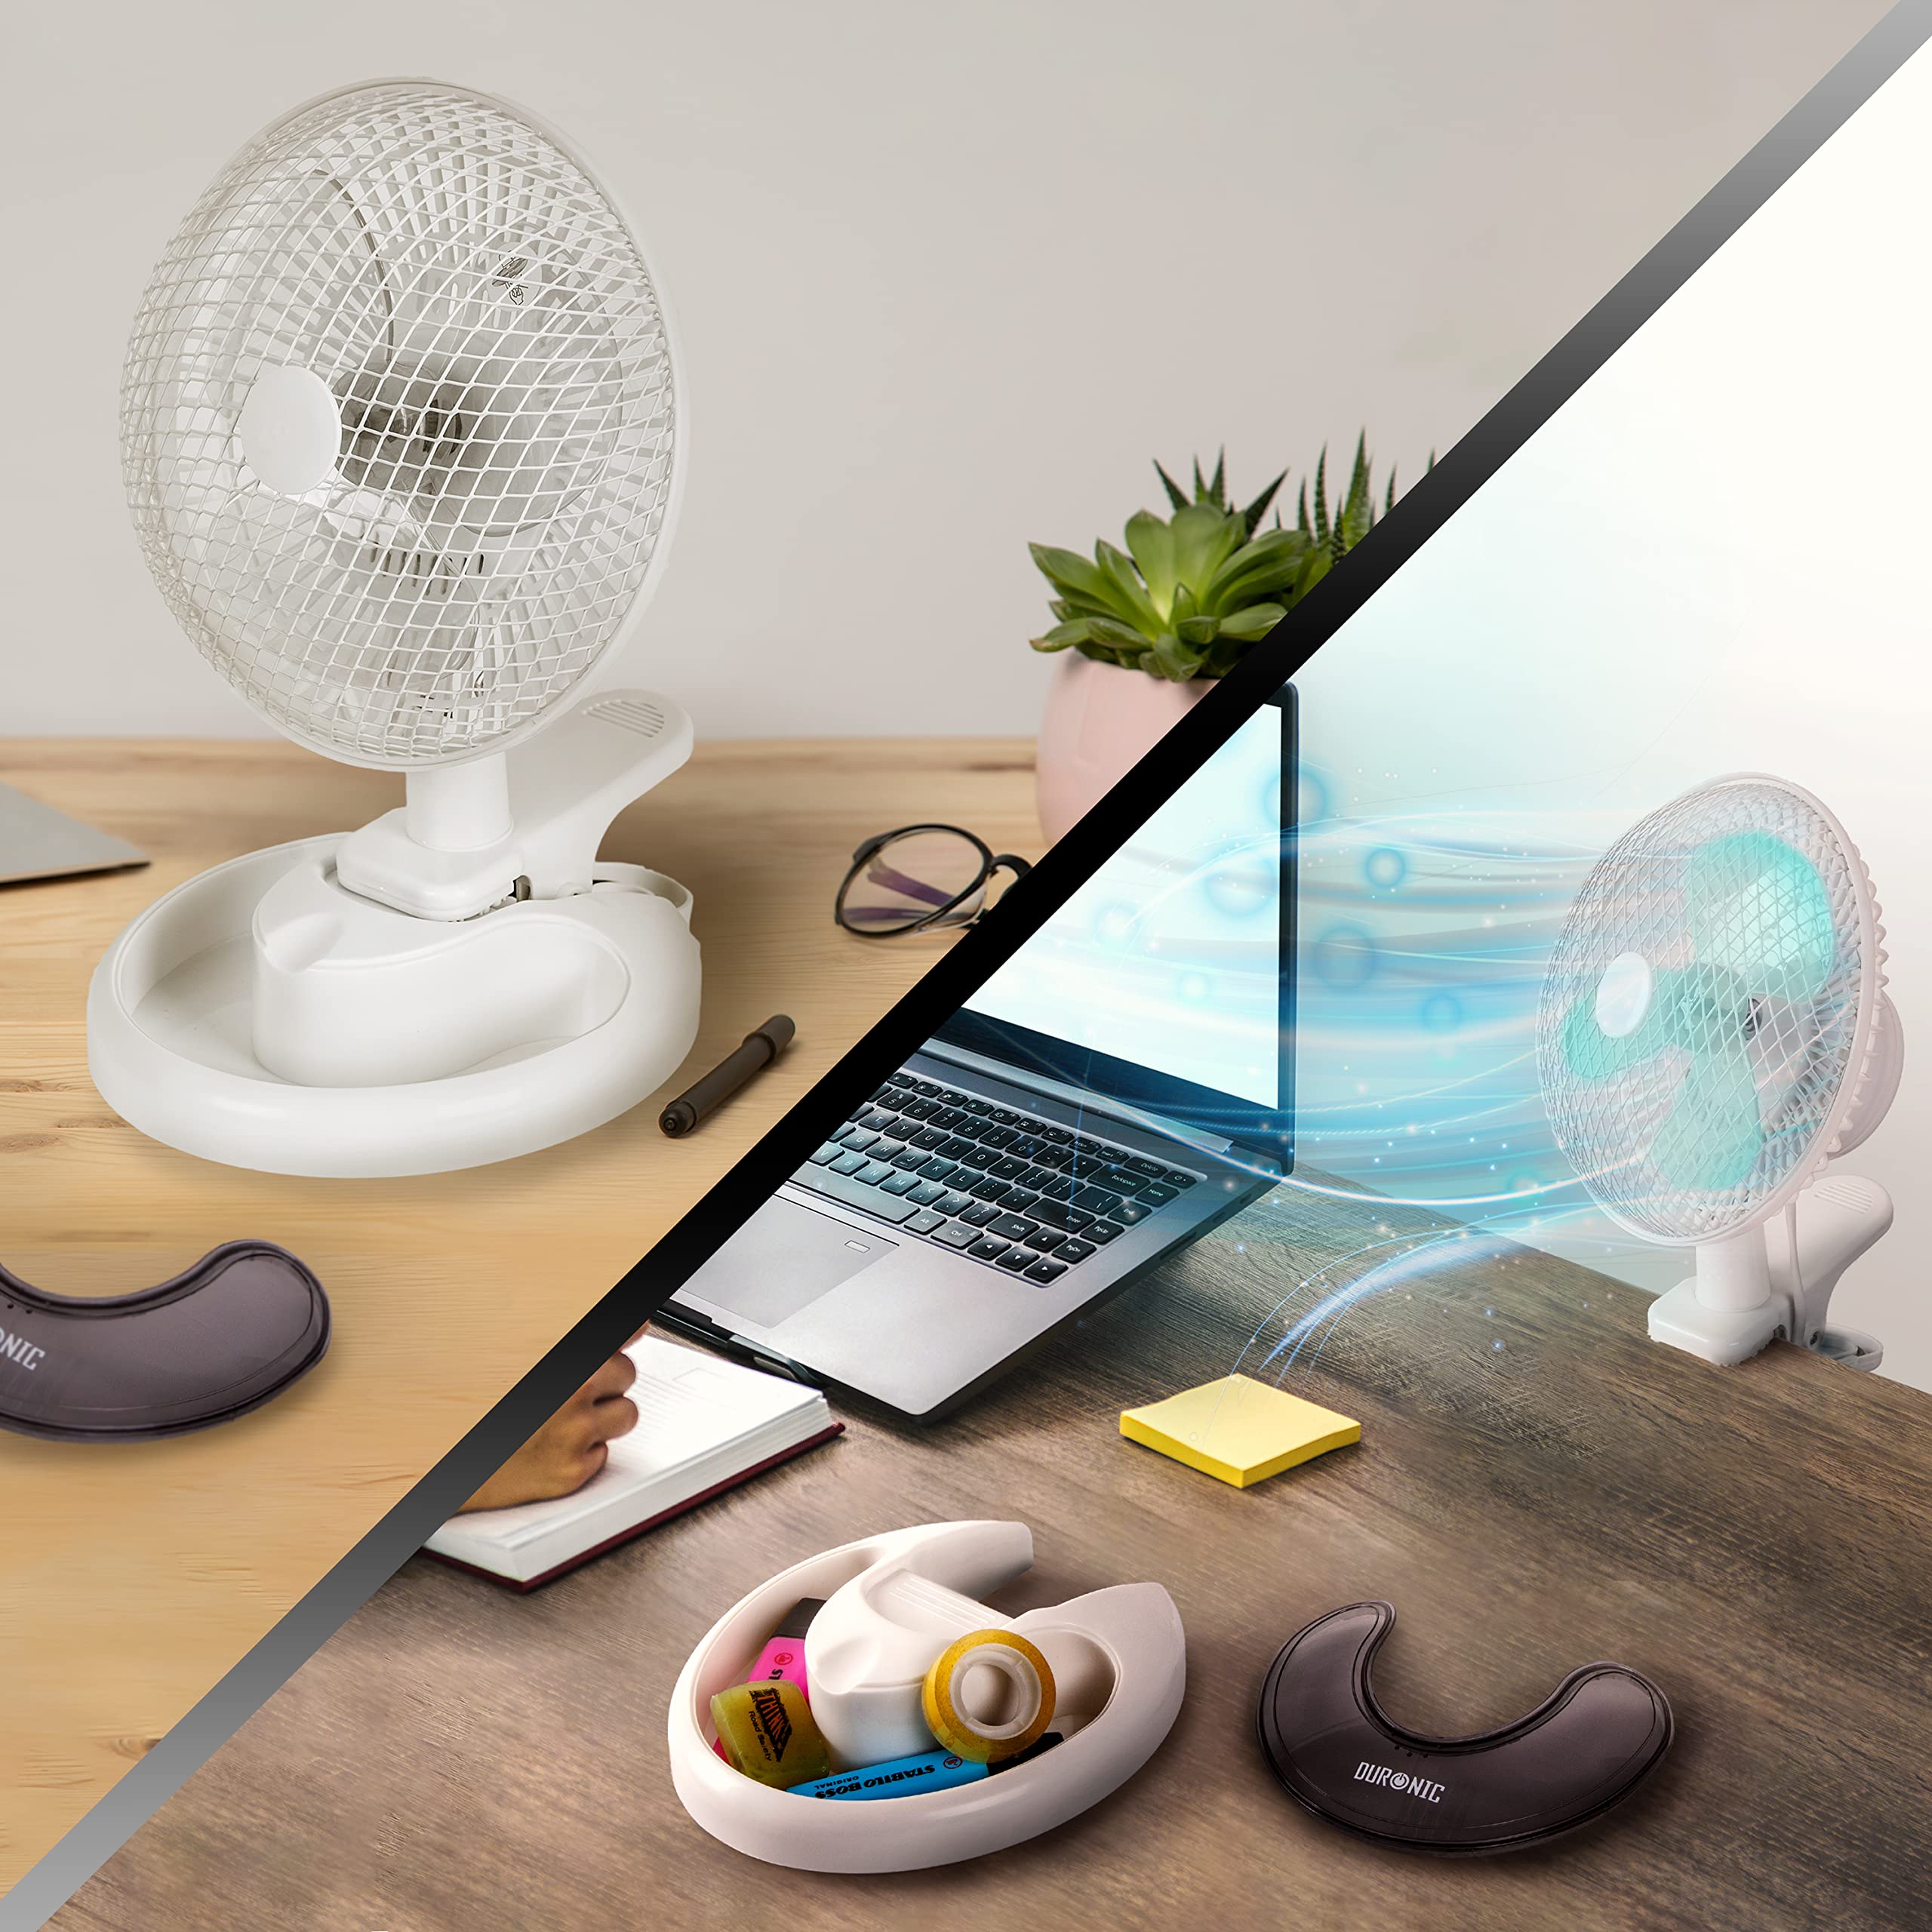 Duronic Mini Desk Fan FN15, 3-in-1 Clip Fan / Wall Fan / Table Fan, 6 Inch Tilting Head, Portable 2 Speed Small Fan, Air Cooler for Summer